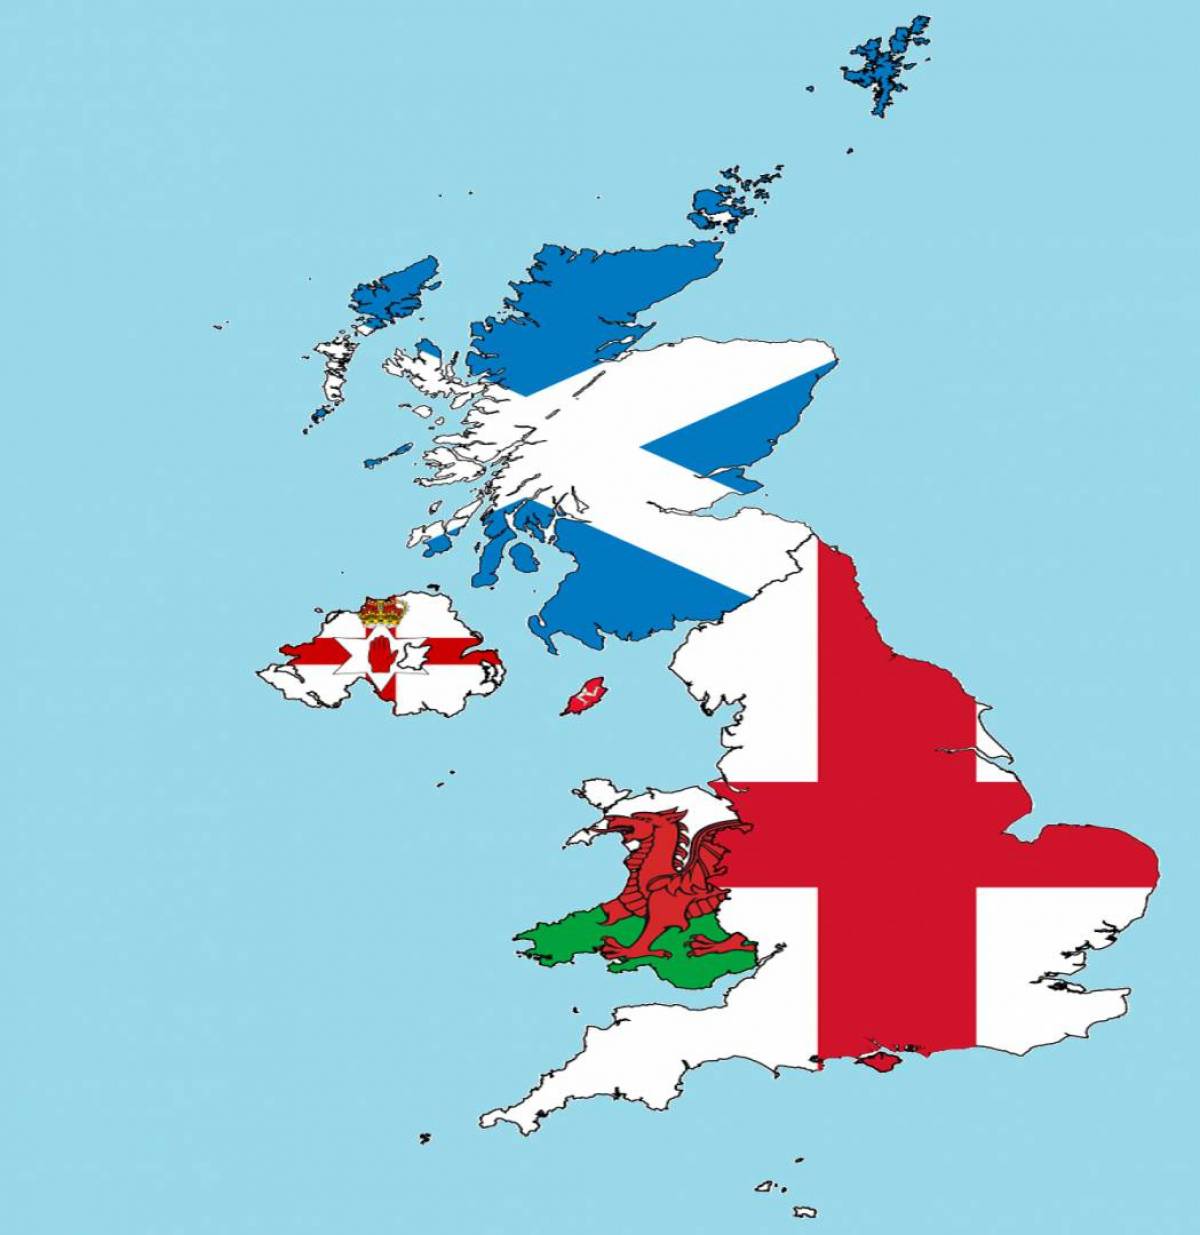 Uk territory. Британия Шотландия Ирландия Уэльс. Карта Британия Великобритания. Карта Соединенного королевства Англии. Карта Соединенного королевства Великобритании и Северной Ирландии.